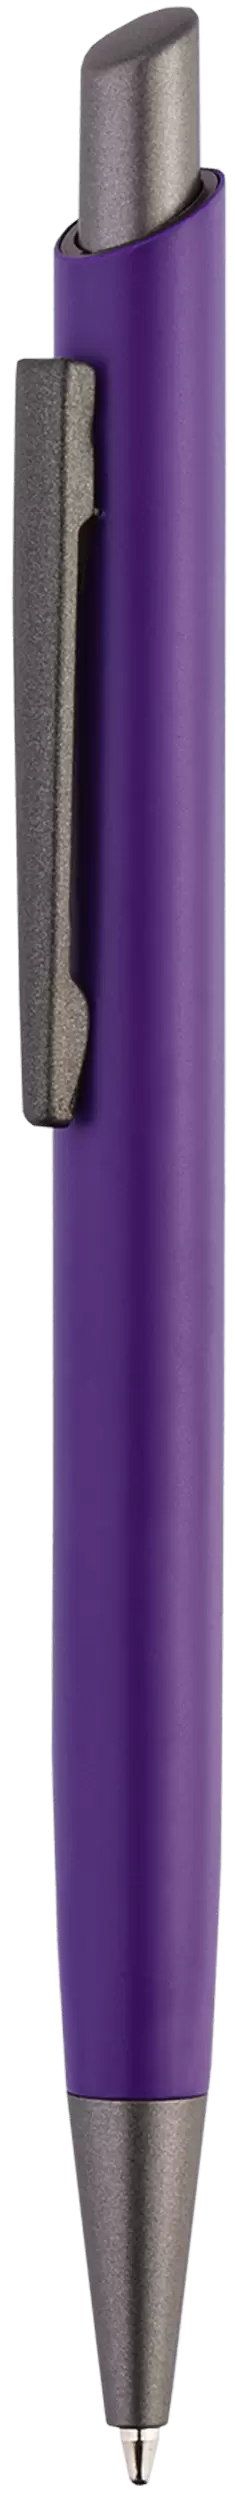 Ручка ELFARO TITAN Фиолетовая 3052.11